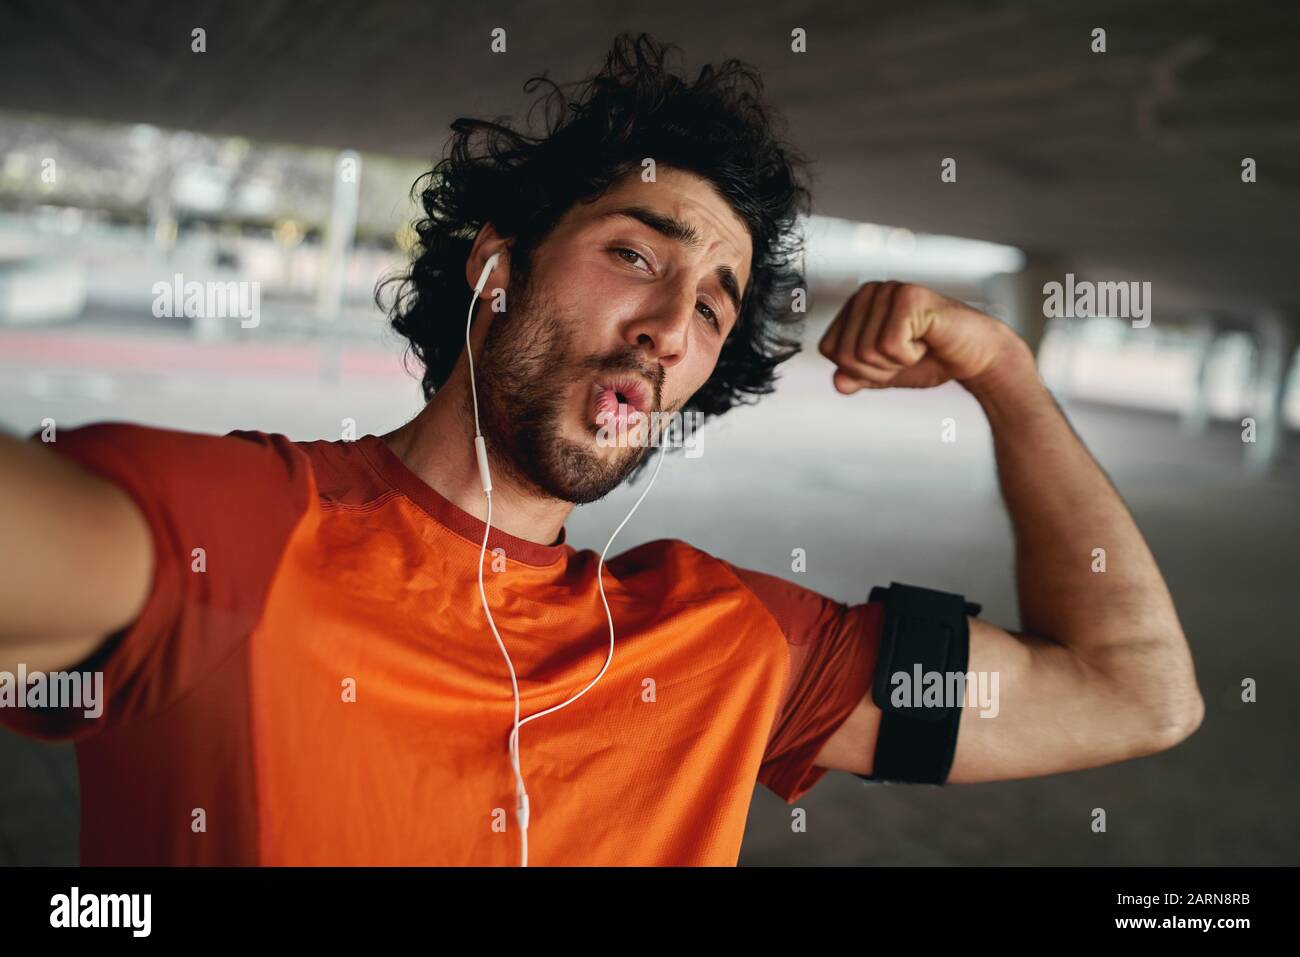 Un jeune sportif à la coupe attrayante avec écouteurs qui fait du visage drôle fléchissement de ses muscles tout en prenant un selfie dehors Banque D'Images